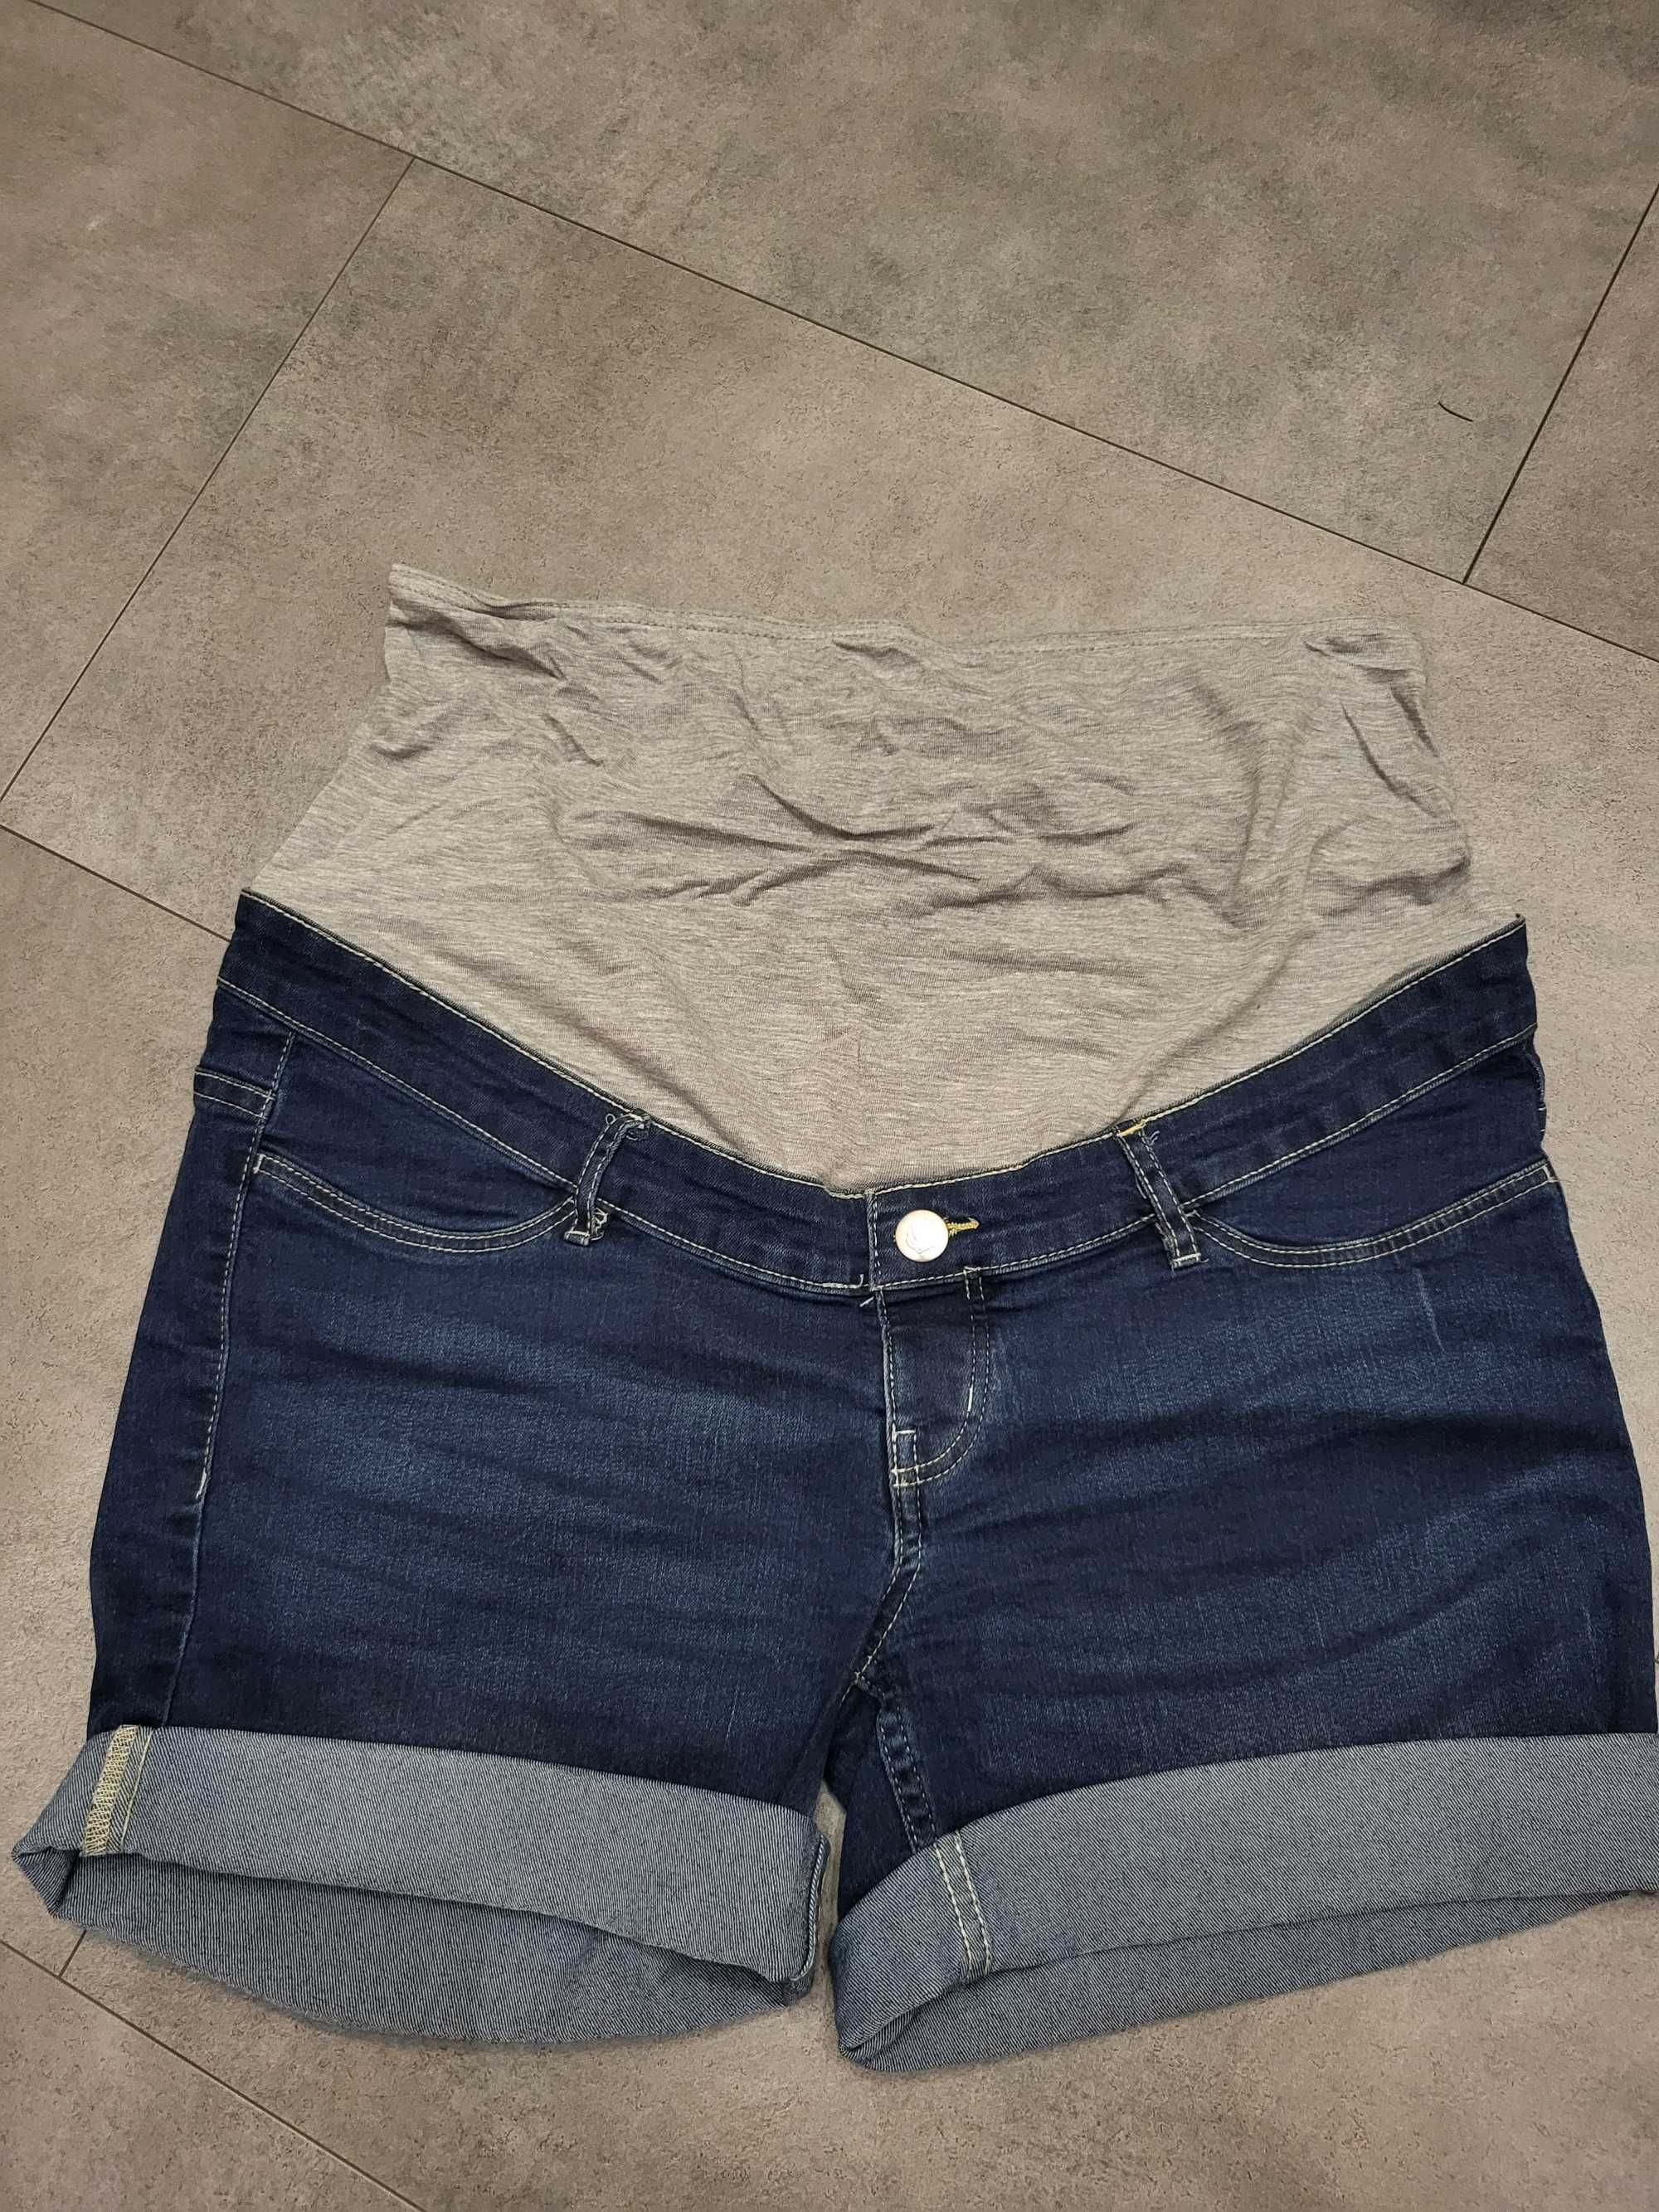 Paka ubrań ciążowych Zestaw legginsy jeansy bluzki szorty rozm. M/L